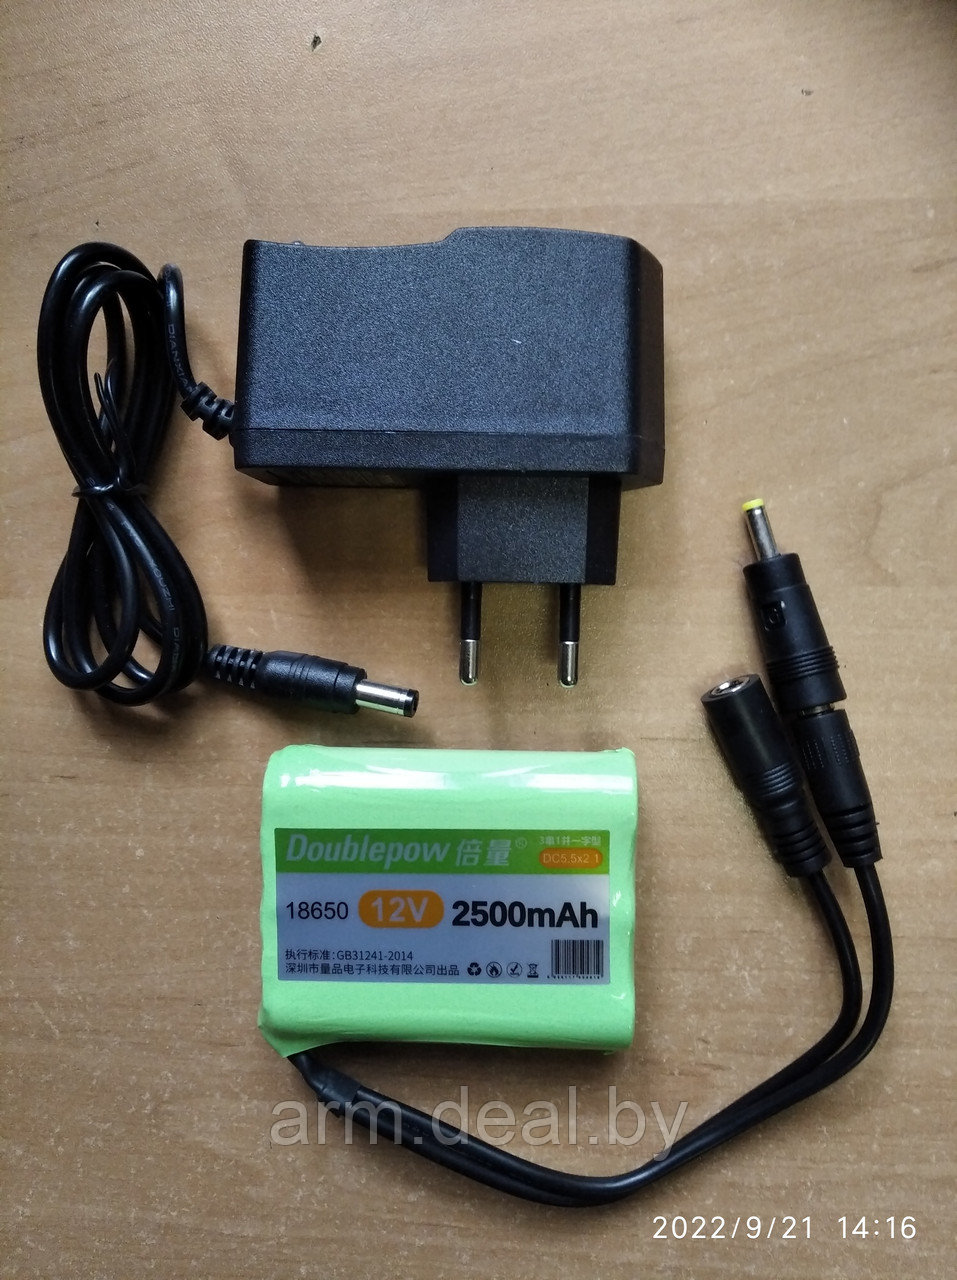 Литий-ионный аккумулятор 12V 2500mAh для фотоловушек и электроманков и др.